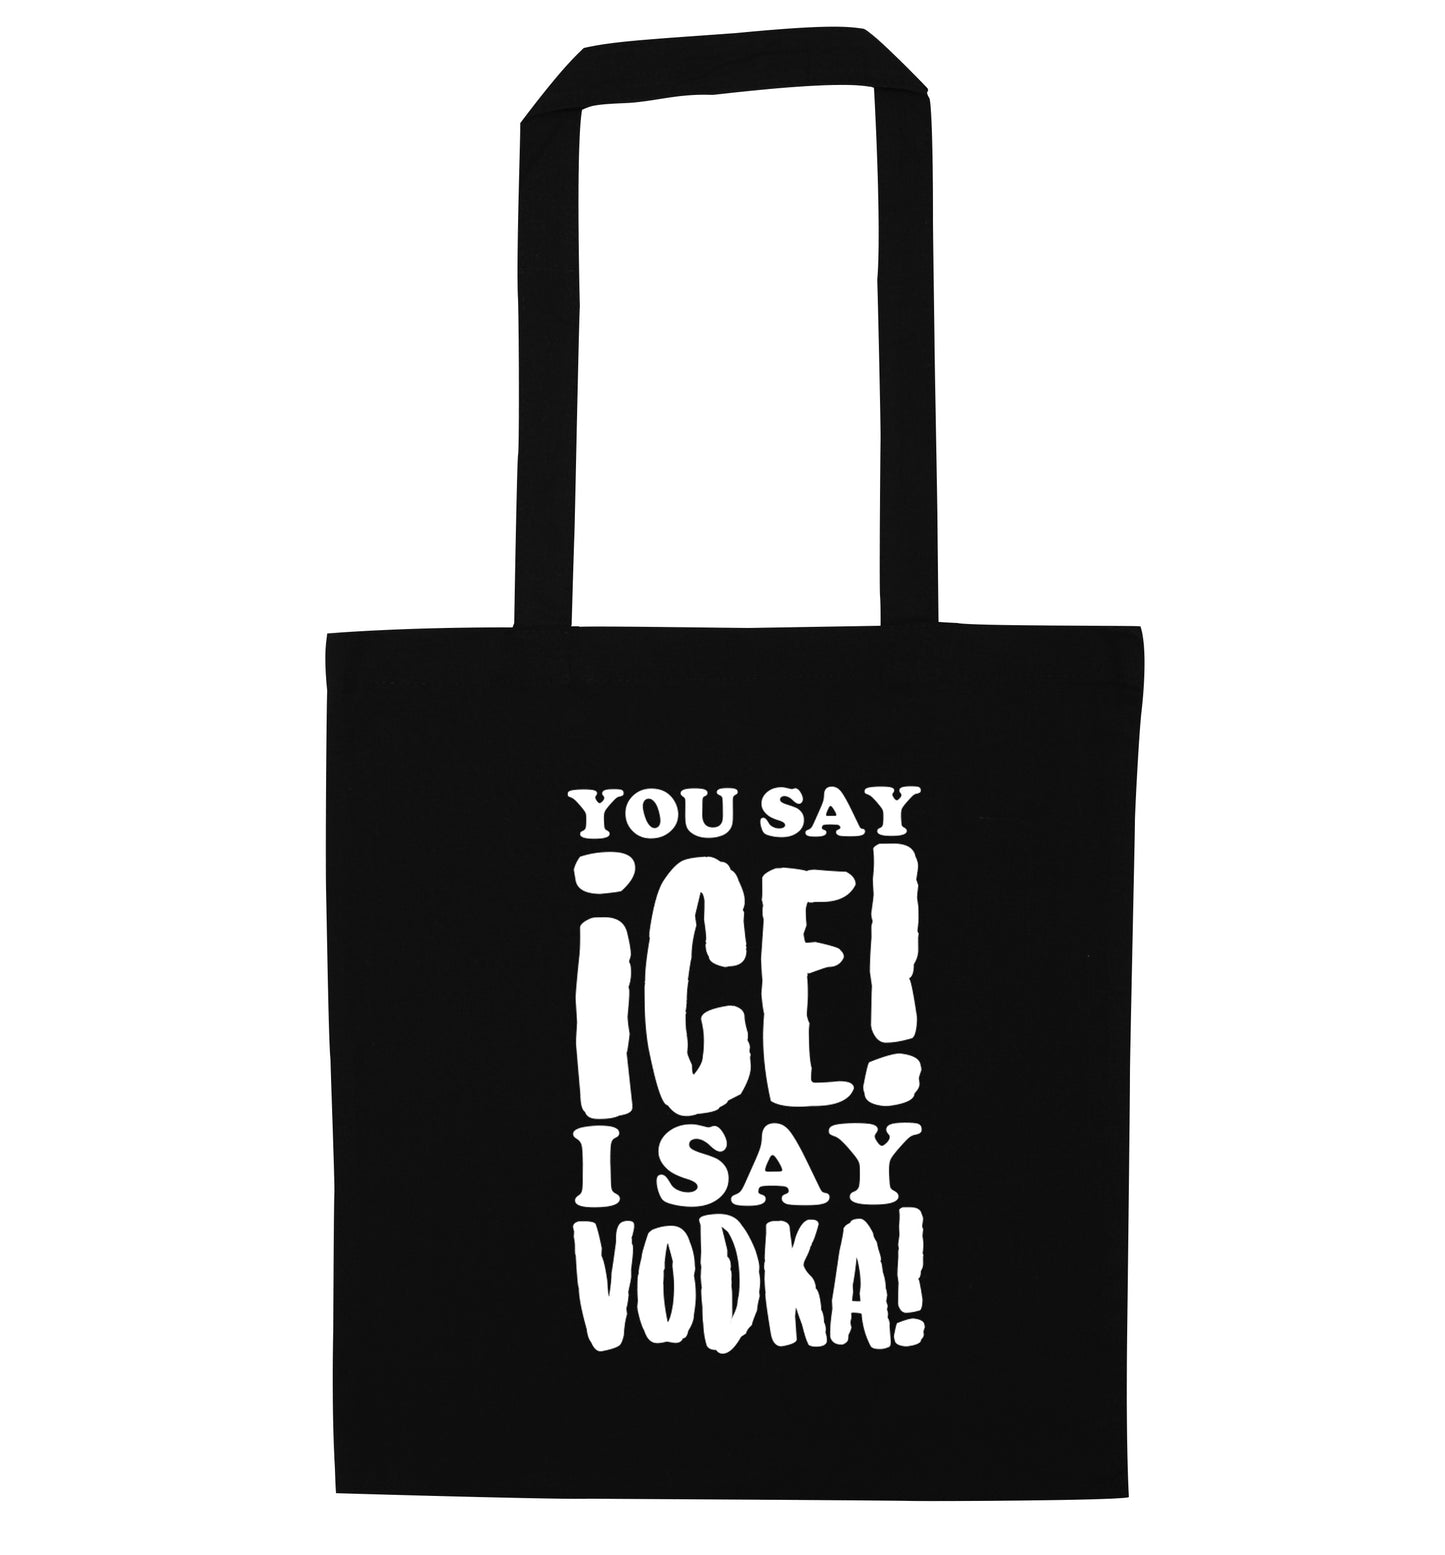 You say ice I say vodka! black tote bag